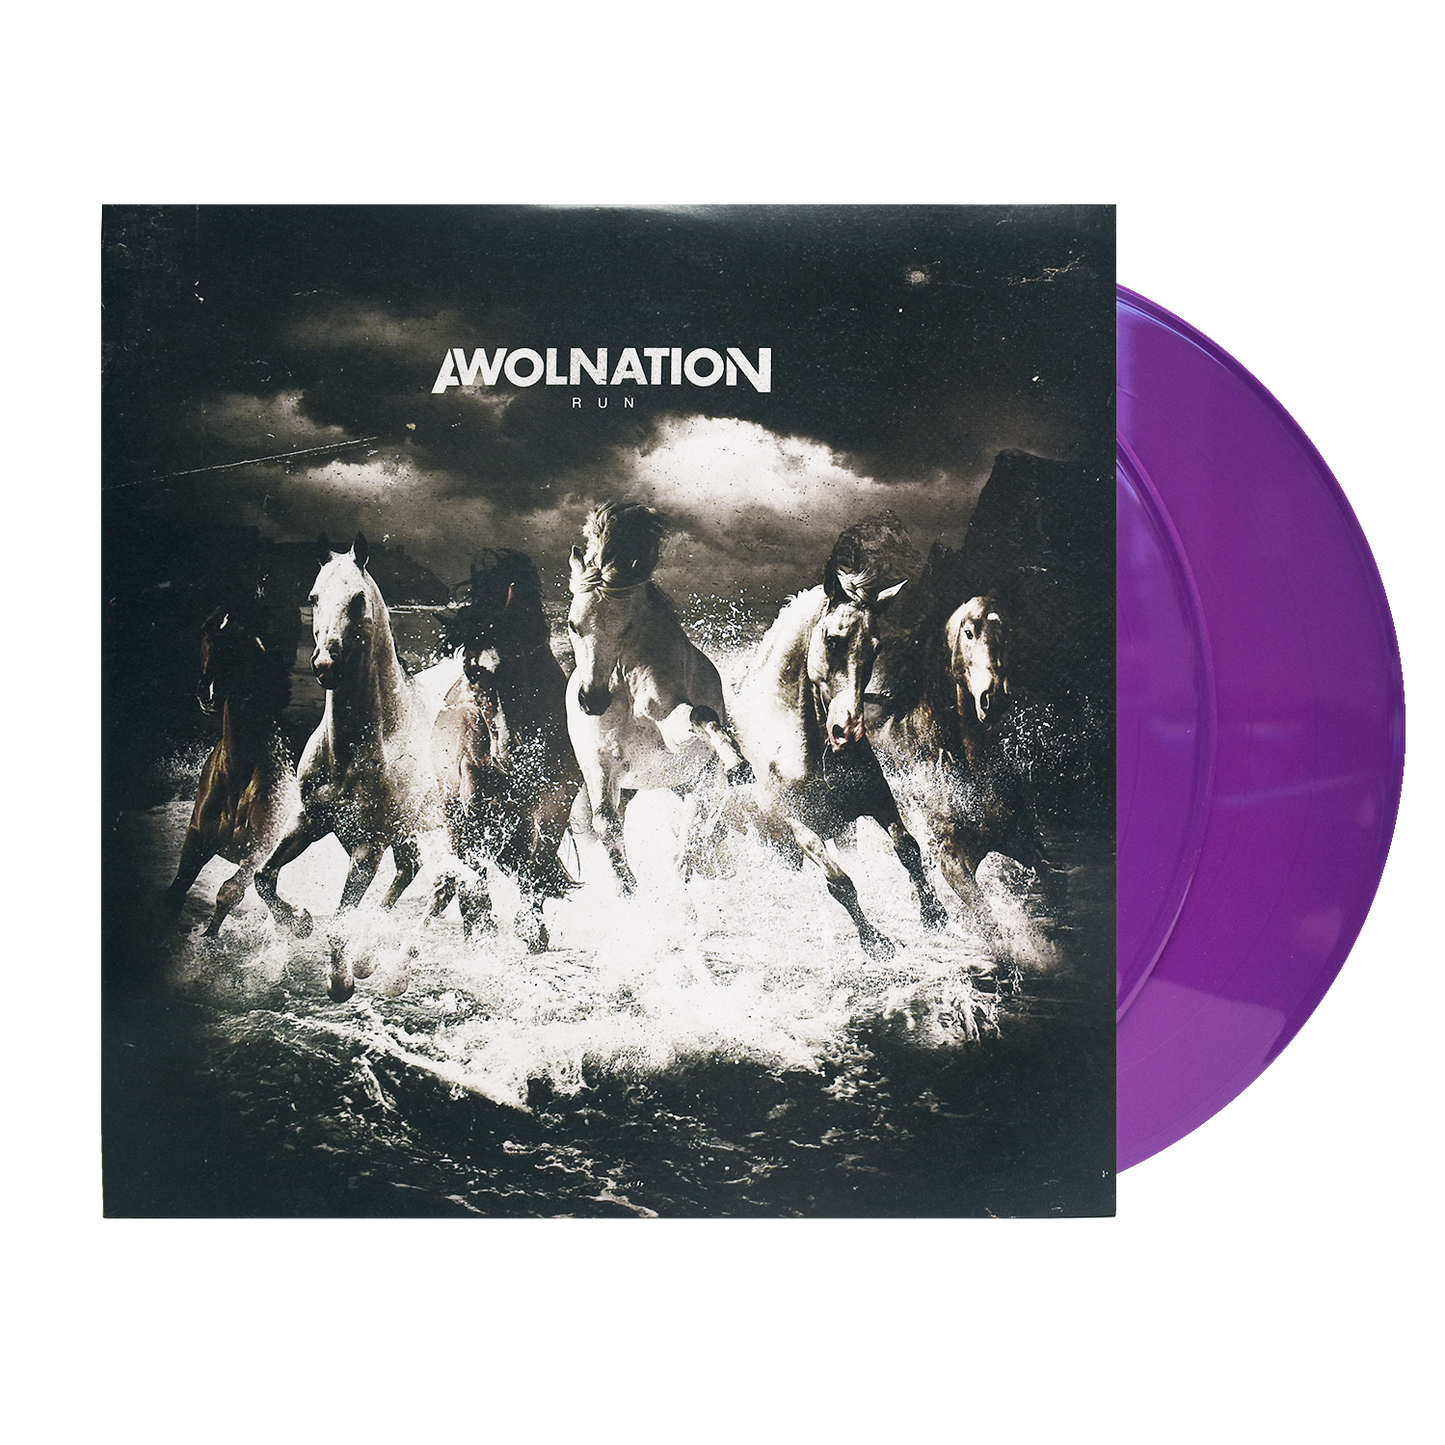 Run Vinyl - Purple